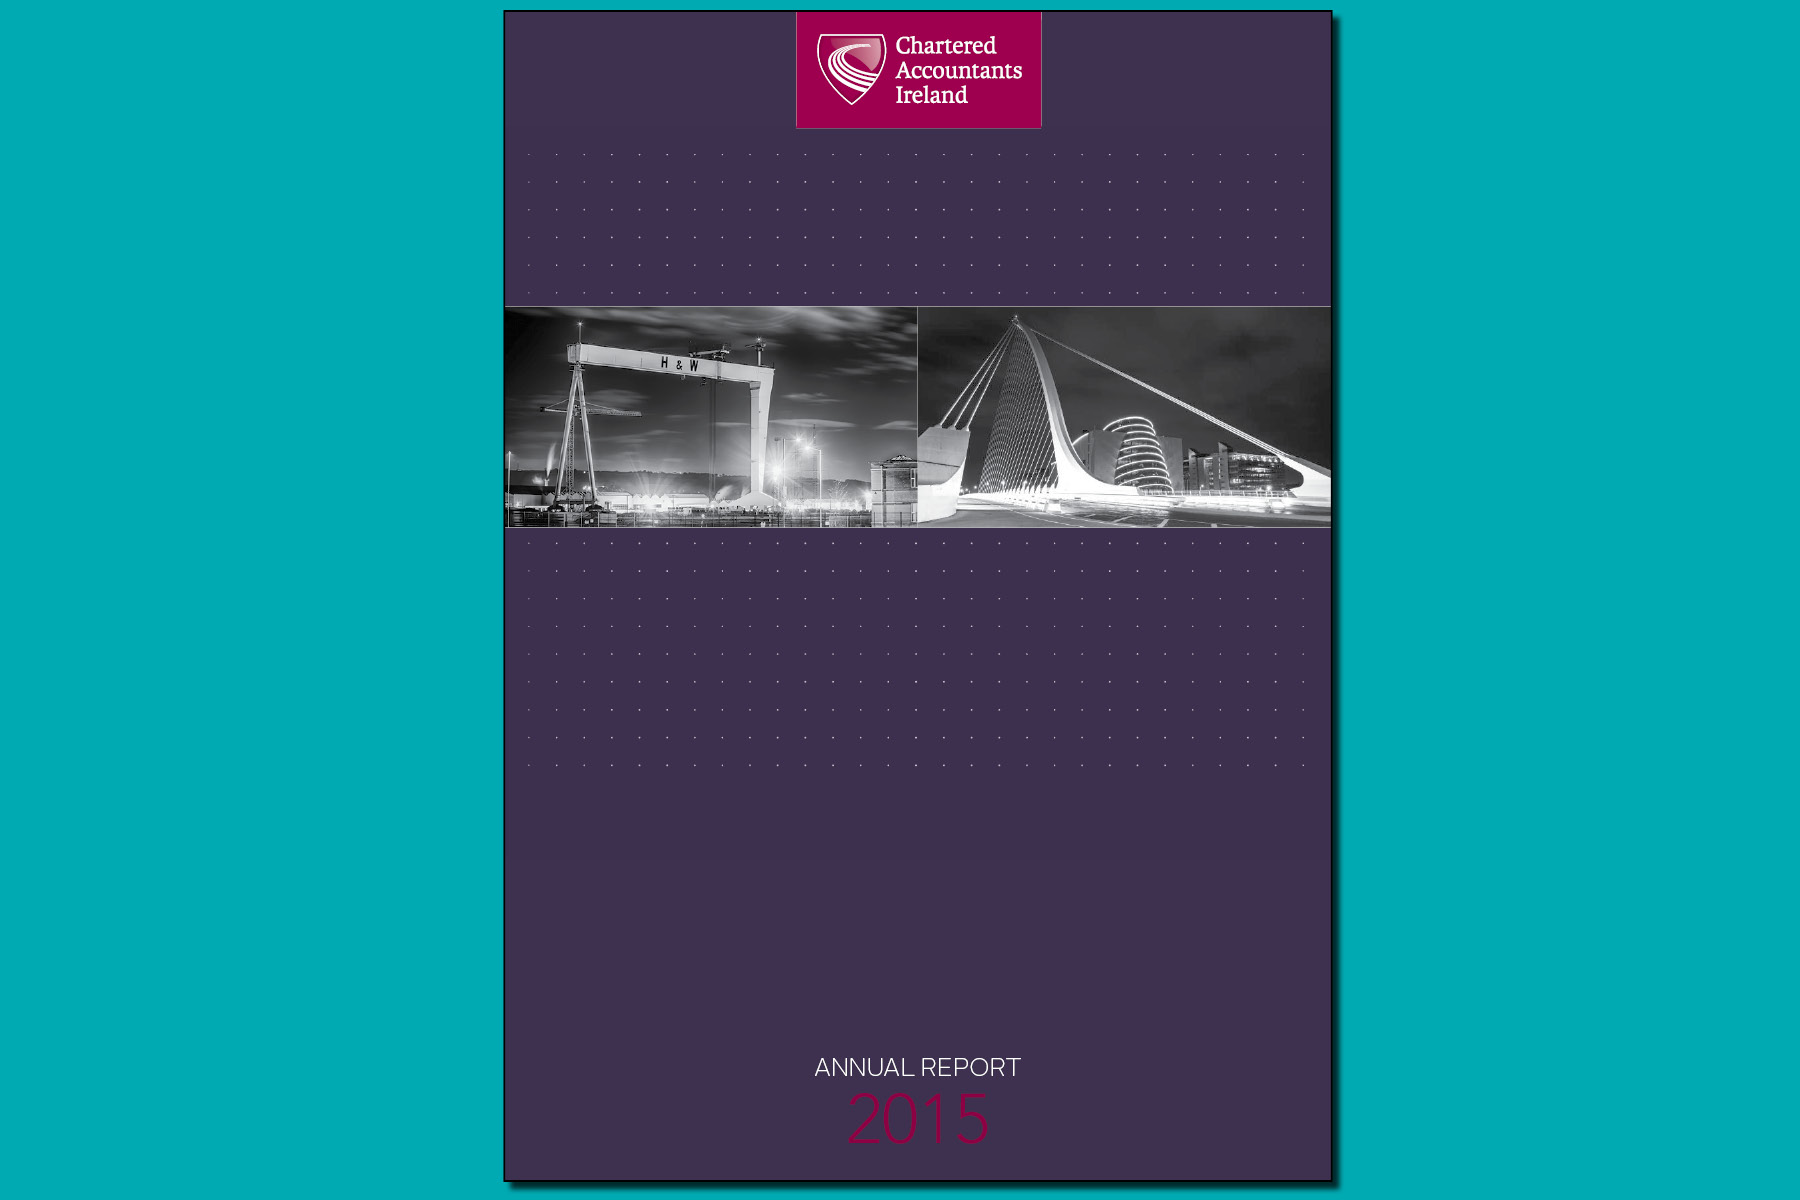 2015 Annual Report 1800x1200